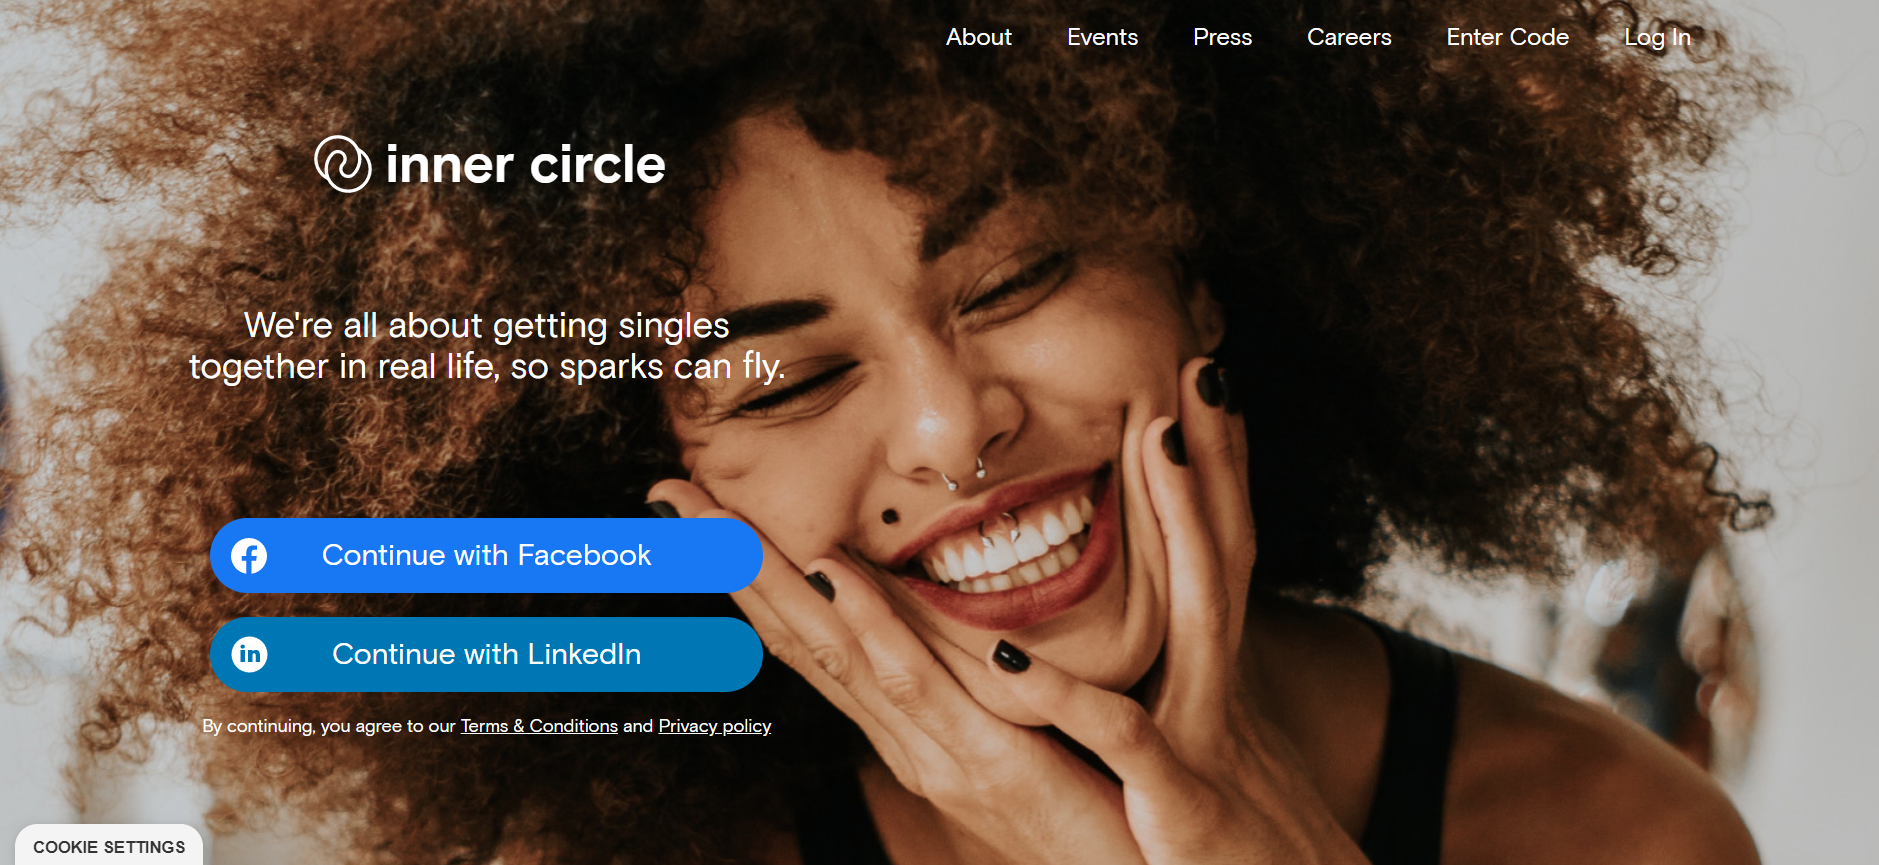 innercircle dating - 5 app di appuntamenti di alto profilo per single d’élite